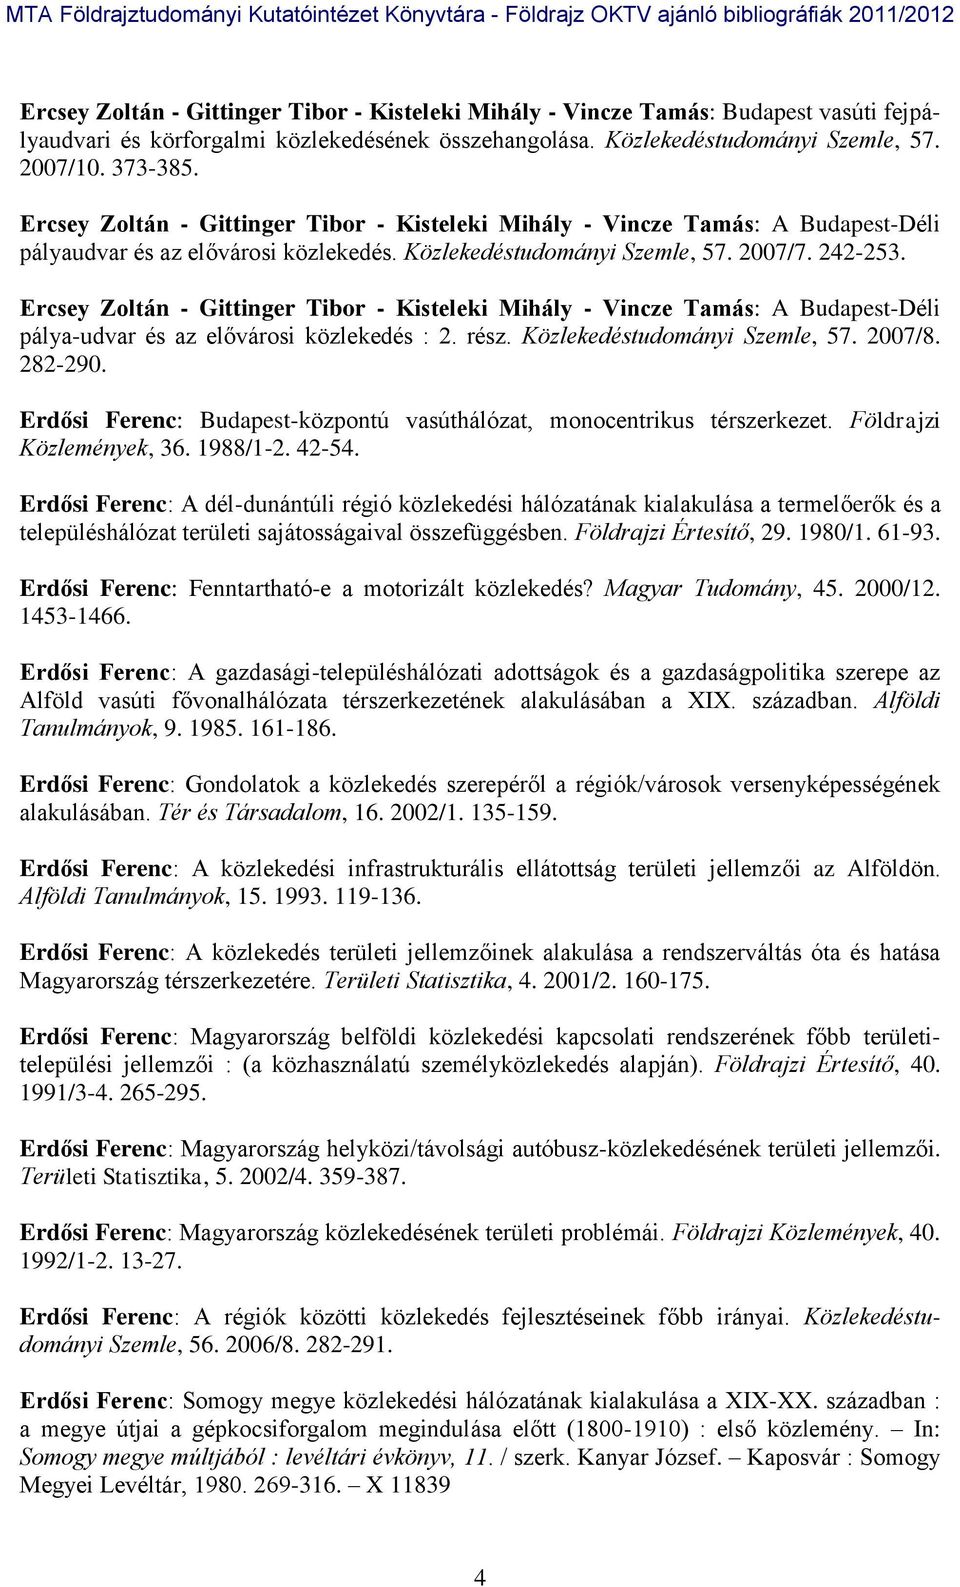 Ercsey Zoltán - Gittinger Tibor - Kisteleki Mihály - Vincze Tamás: A Budapest-Déli pálya-udvar és az elővárosi közlekedés : 2. rész. Közlekedéstudományi Szemle, 57. 2007/8. 282-290.